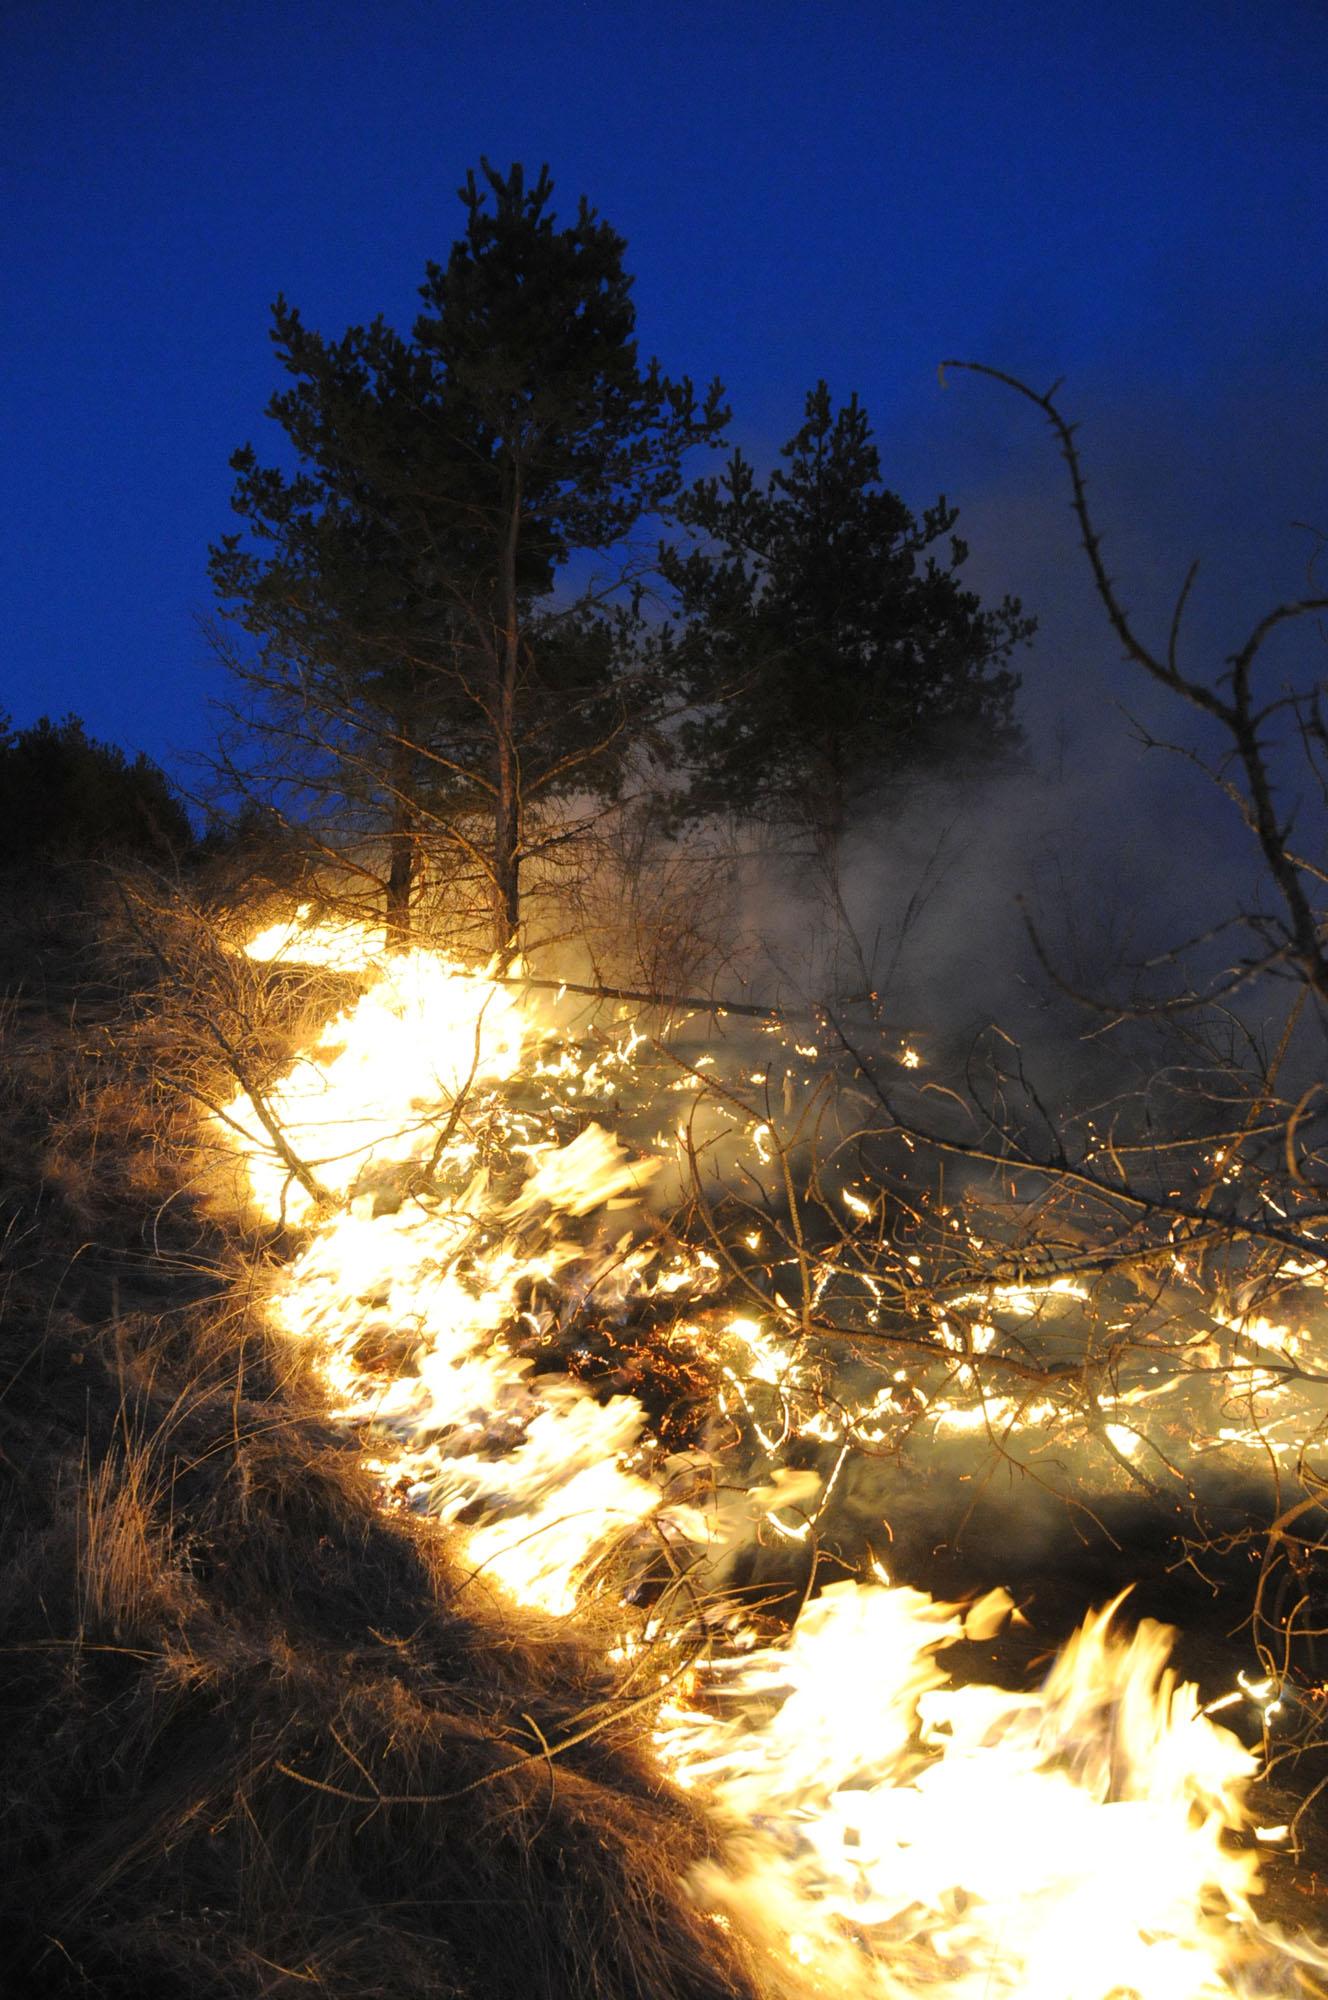 Още гасят 2 пожара- в Родопите и Плана планина